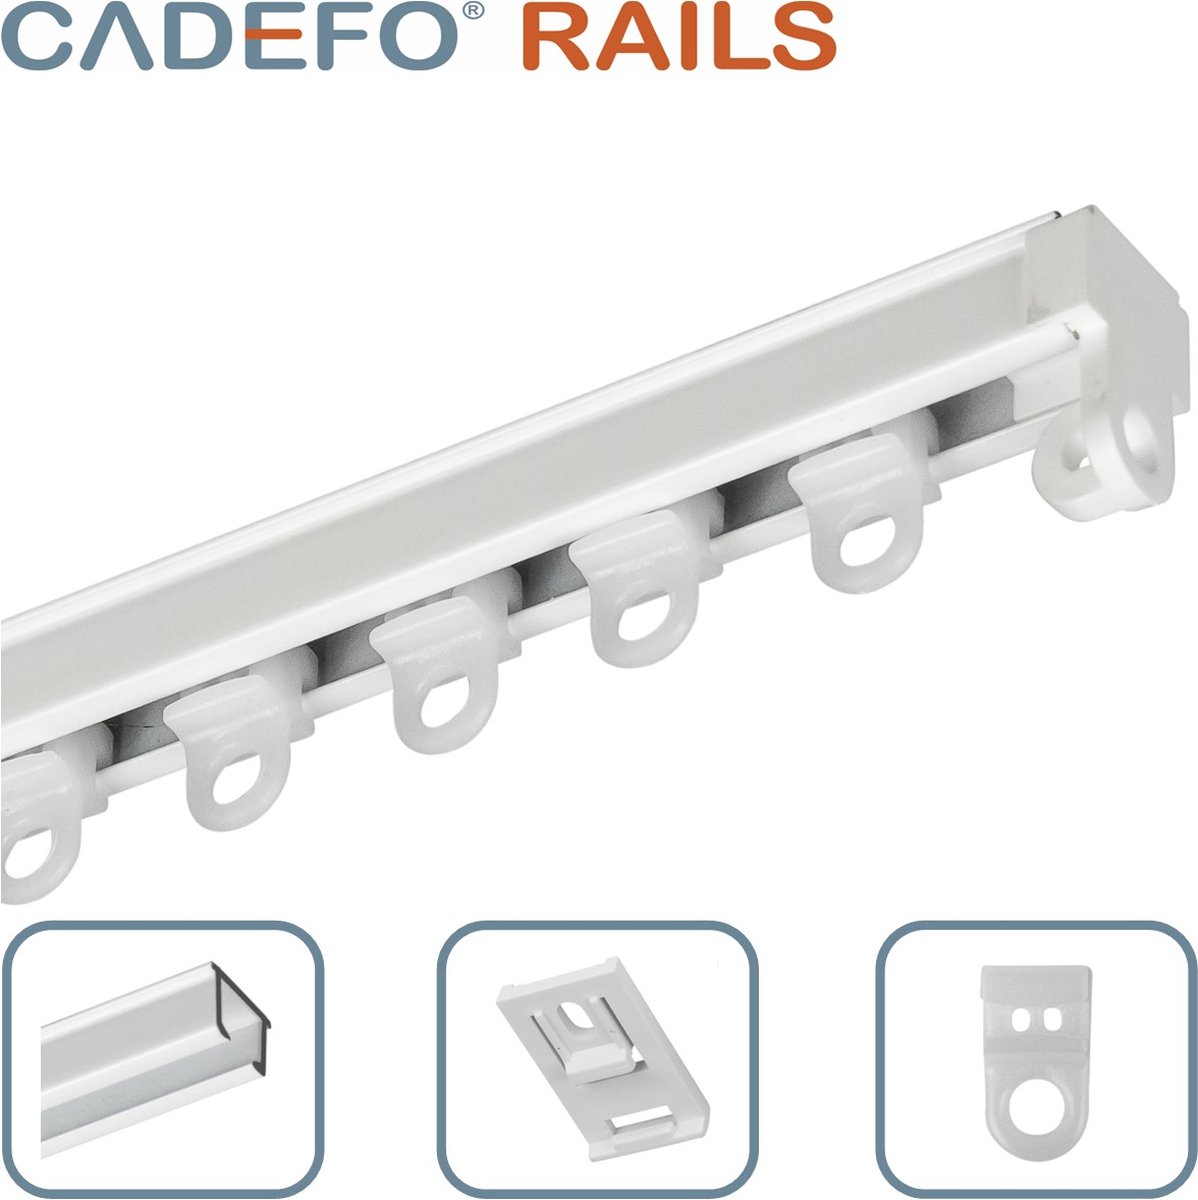 CADEFO RAILS (401 - 450 cm) Gordijnrails - Compleet op maat! - UIT 1 STUK - Leverbaar tot 6 meter - Plafondbevestiging - Lengte 417 cm